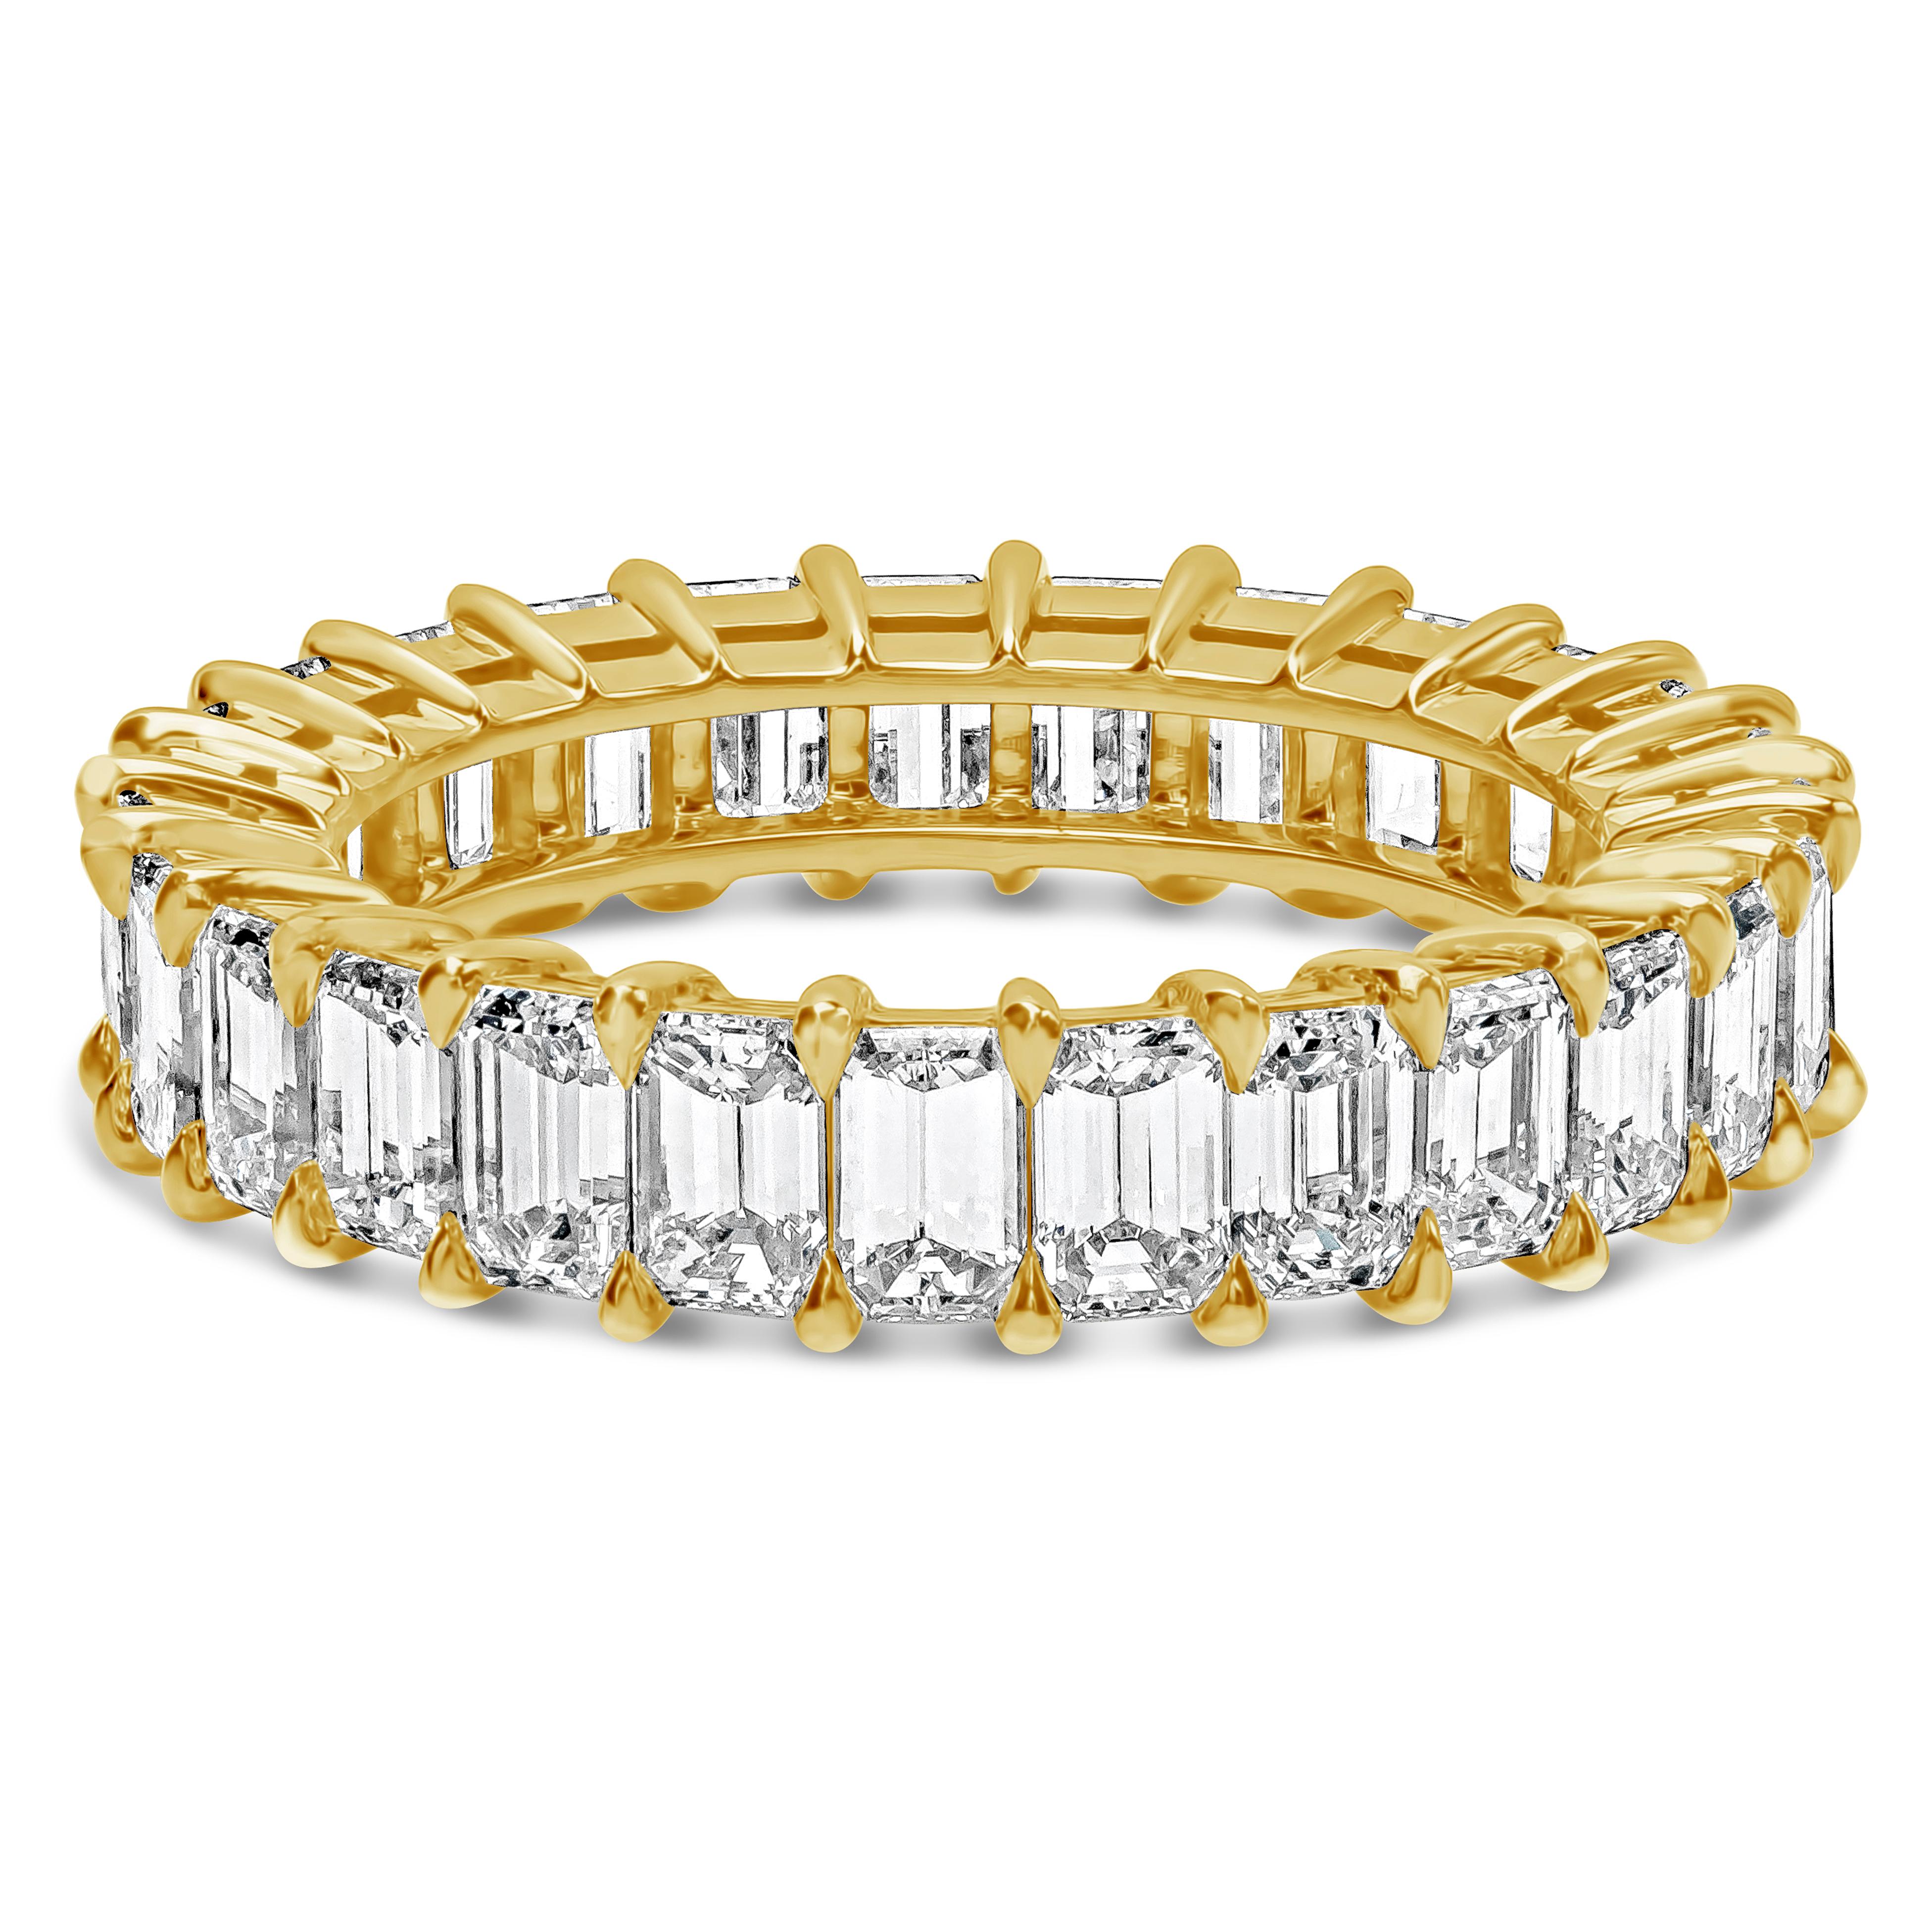 Ein klassischer Ehering für die Ewigkeit mit einer Reihe von Diamanten im Smaragdschliff von insgesamt 4,15 Karat, Farbe G und Reinheit VS. In einer zeitlosen Fassung mit geteilten Zacken, aus 18K Gelbgold, Größe 6,5 US.

Roman Malakov ist ein